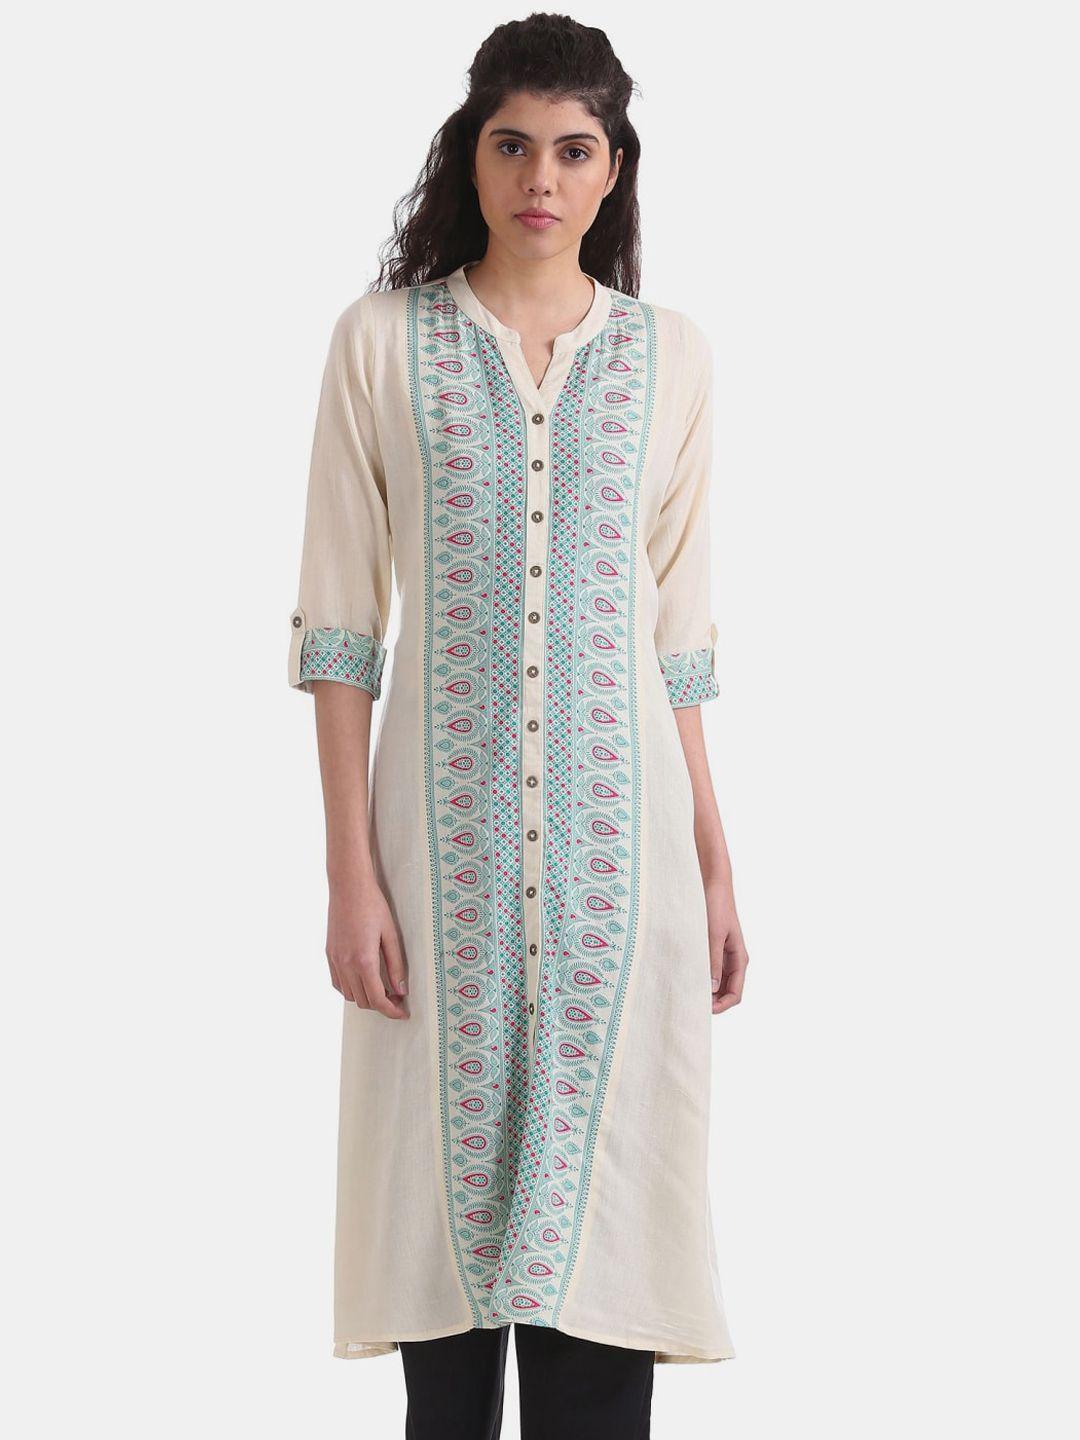 v-mart women white ethnic motifs printed cotton kurta